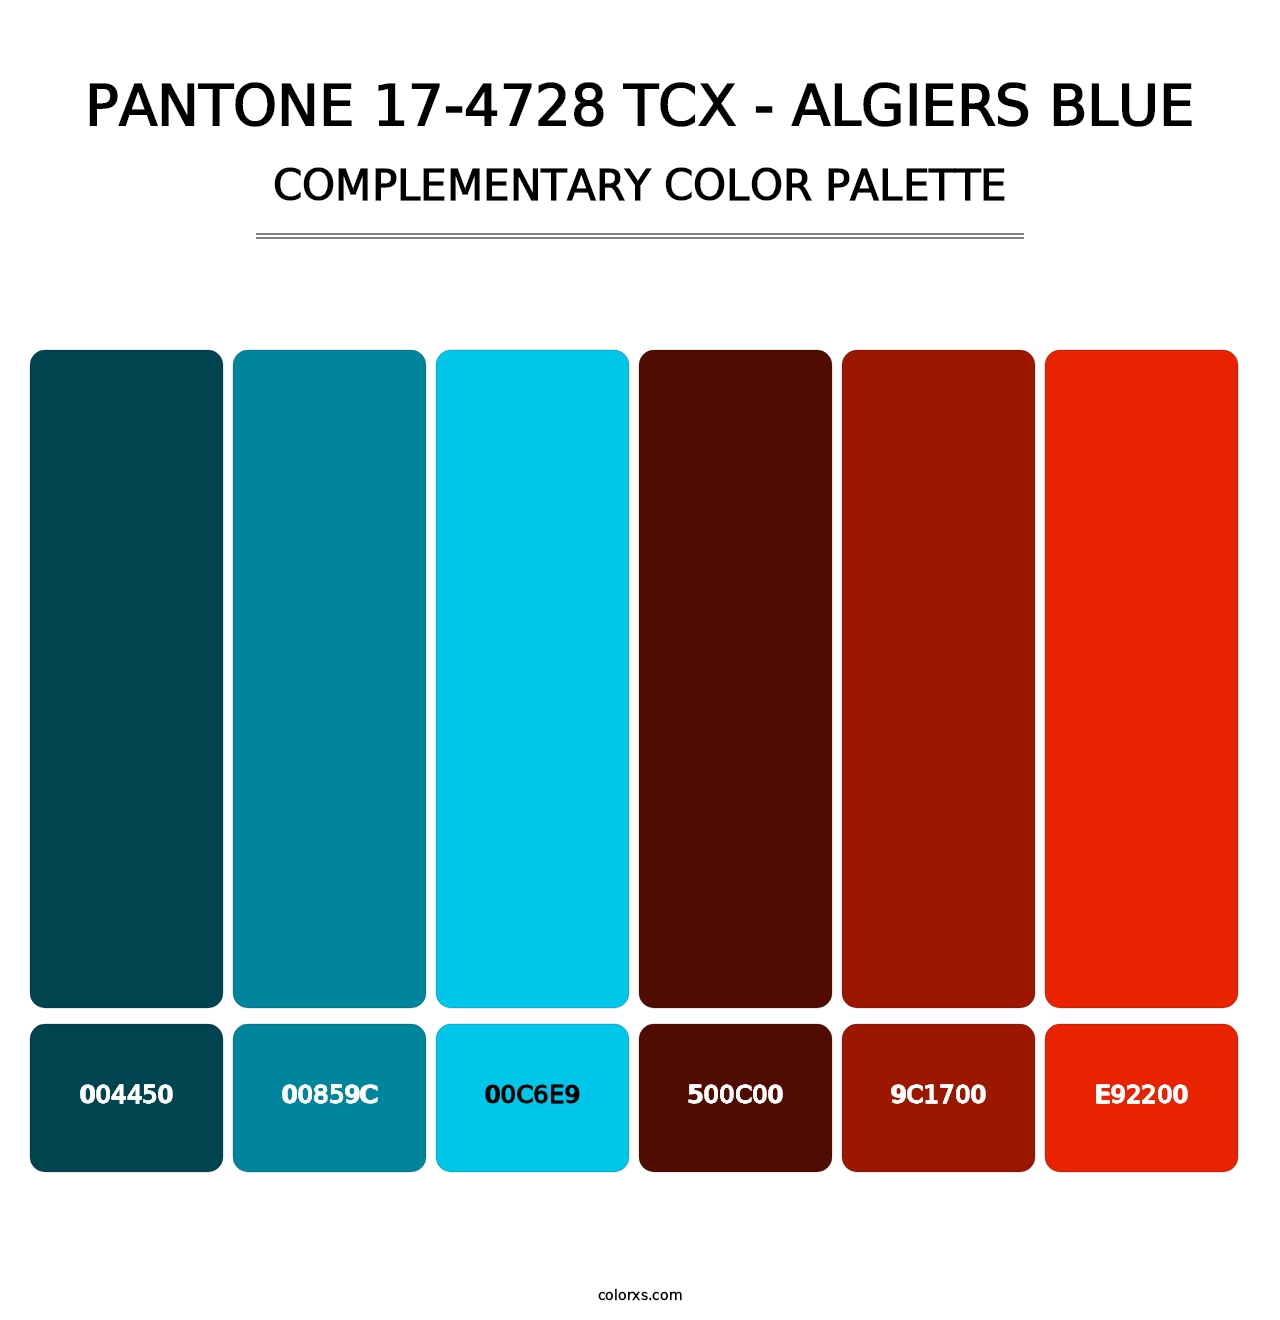 PANTONE 17-4728 TCX - Algiers Blue - Complementary Color Palette